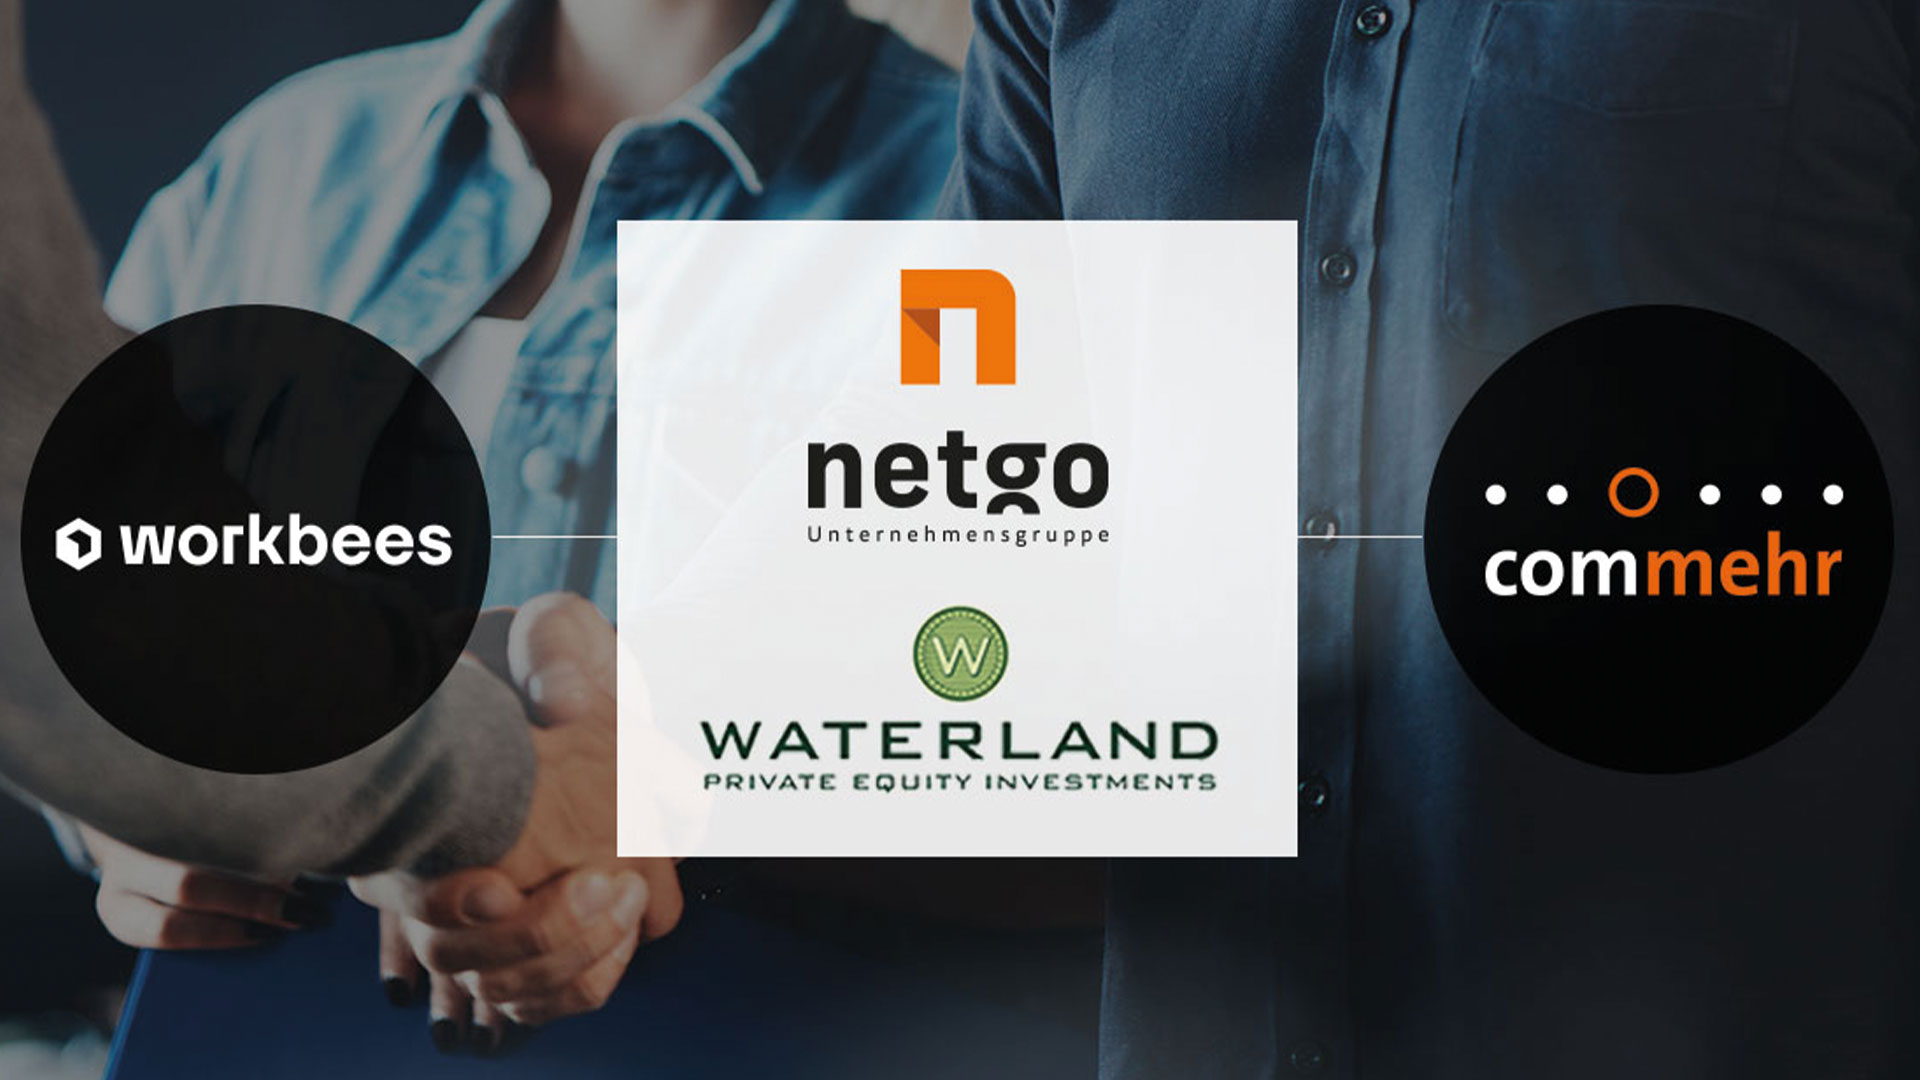 netgo group weiter auf Wachstumskurs: Waterland-Portfoliounternehmen übernimmt commehr und workbees.